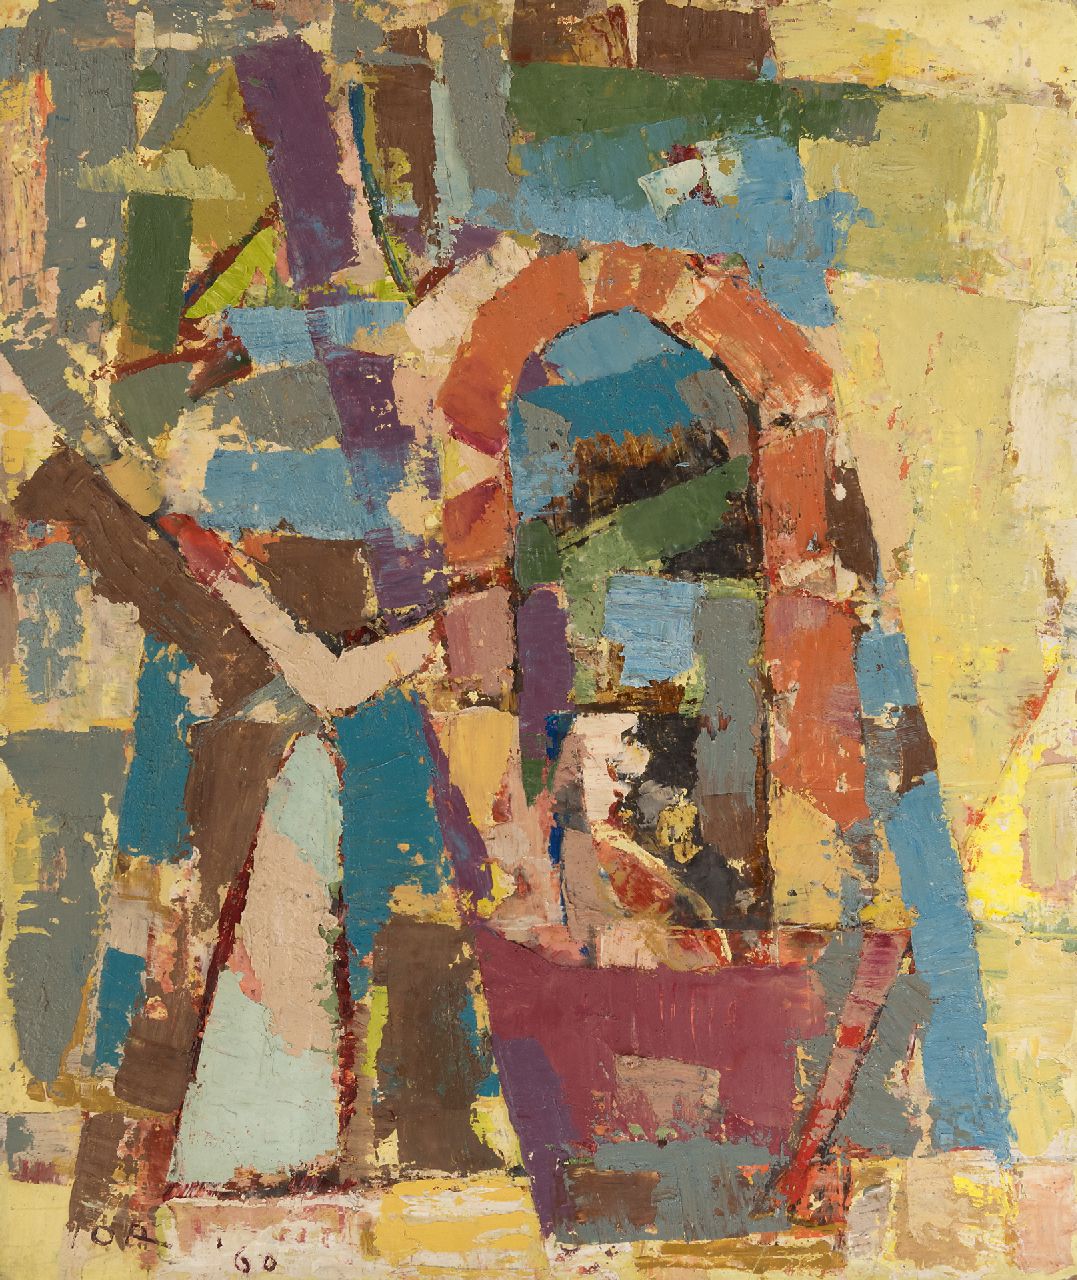 Jordens J.G.  | 'Jan' Gerrit Jordens, Compositie, olieverf op board 59,0 x 50,0 cm, gesigneerd linksonder en gedateerd '60